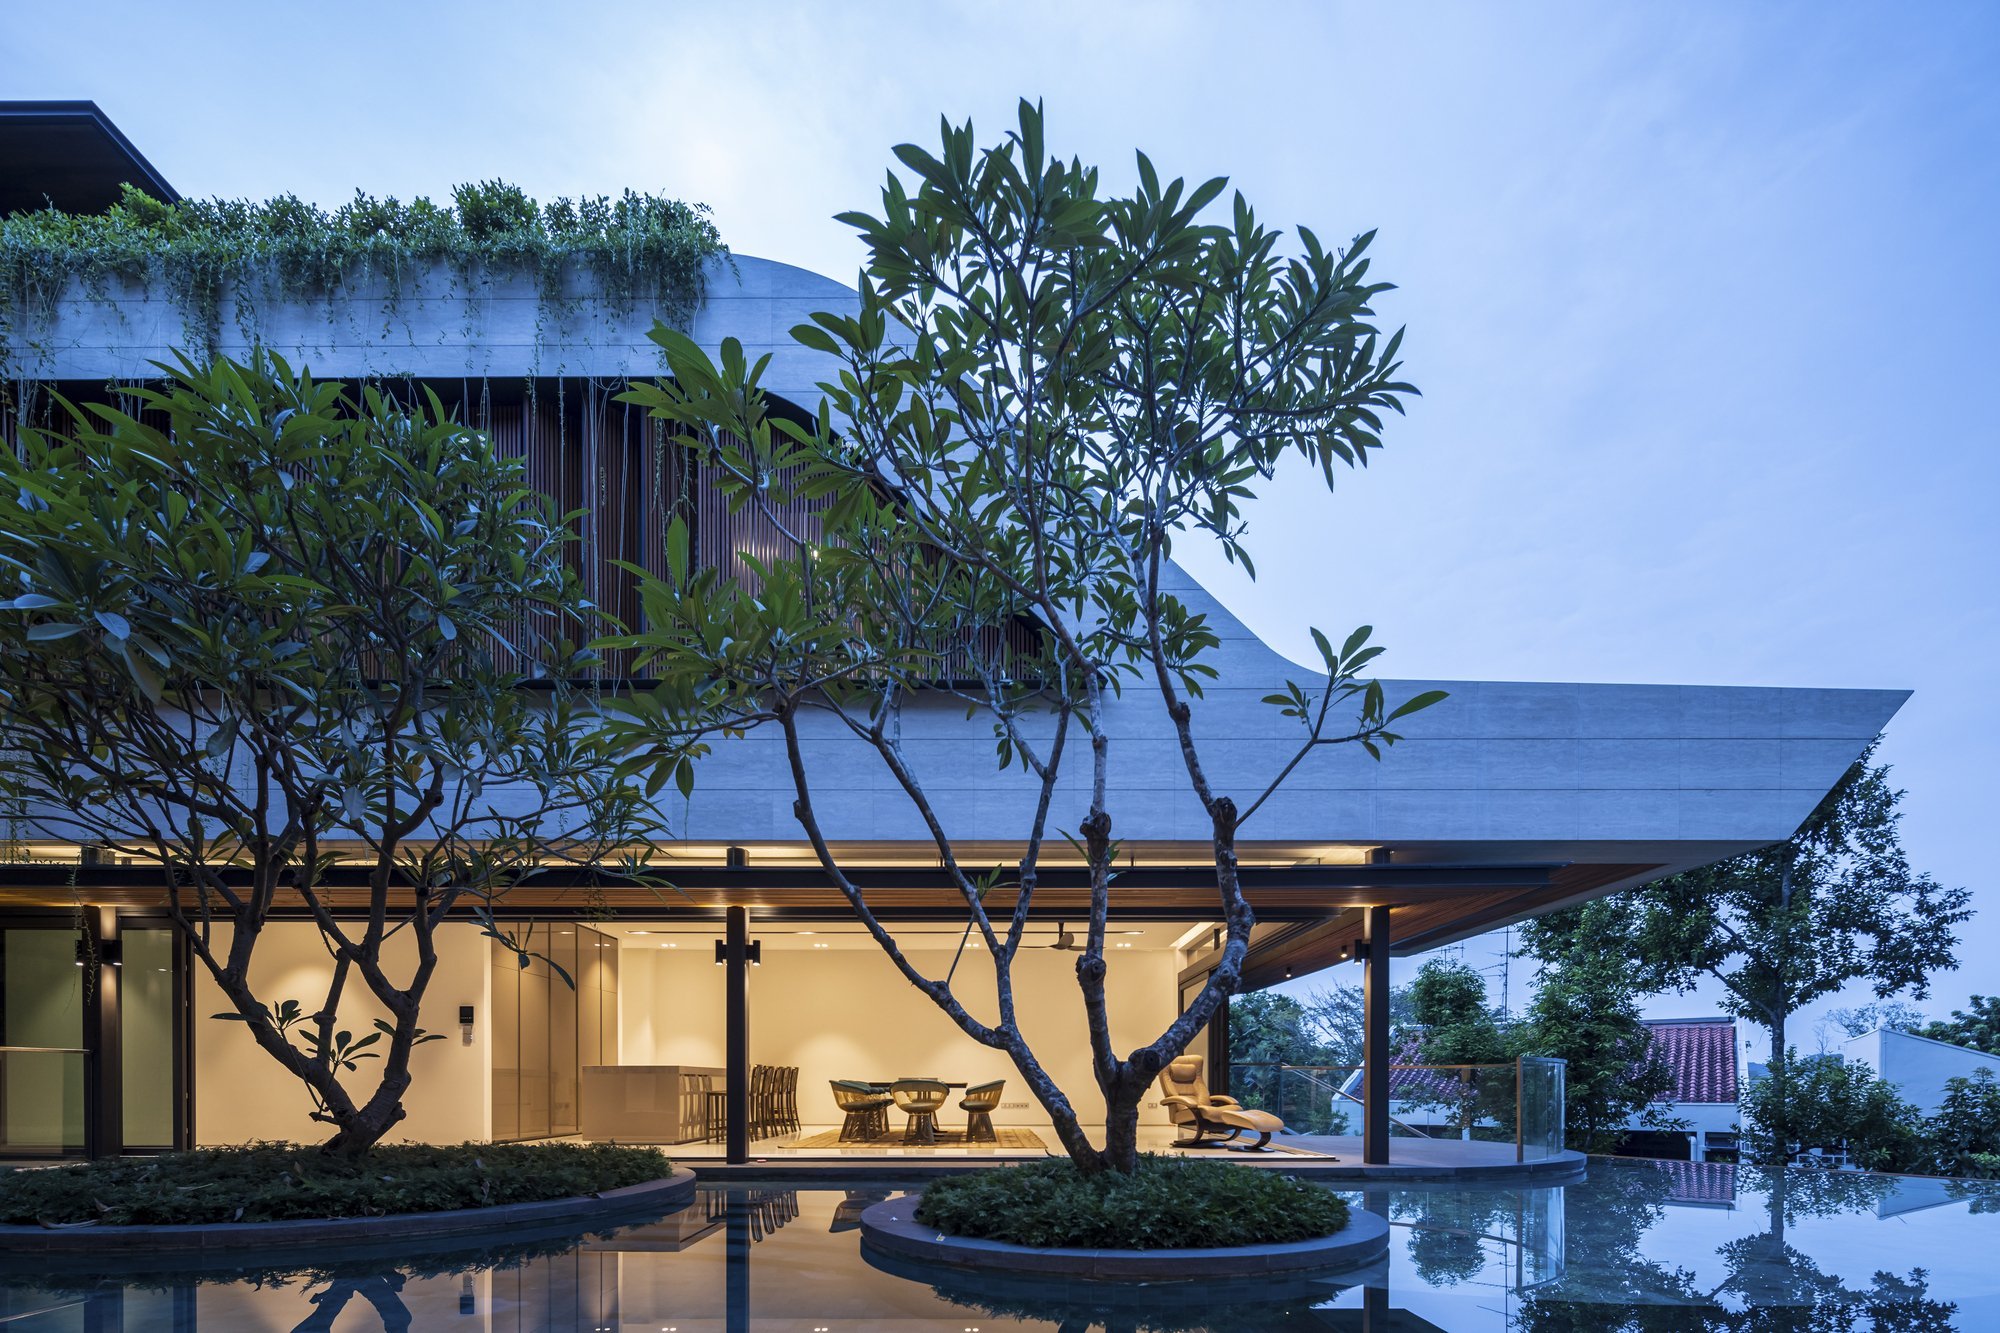 Luxusní dům s bazénem v Singapuru